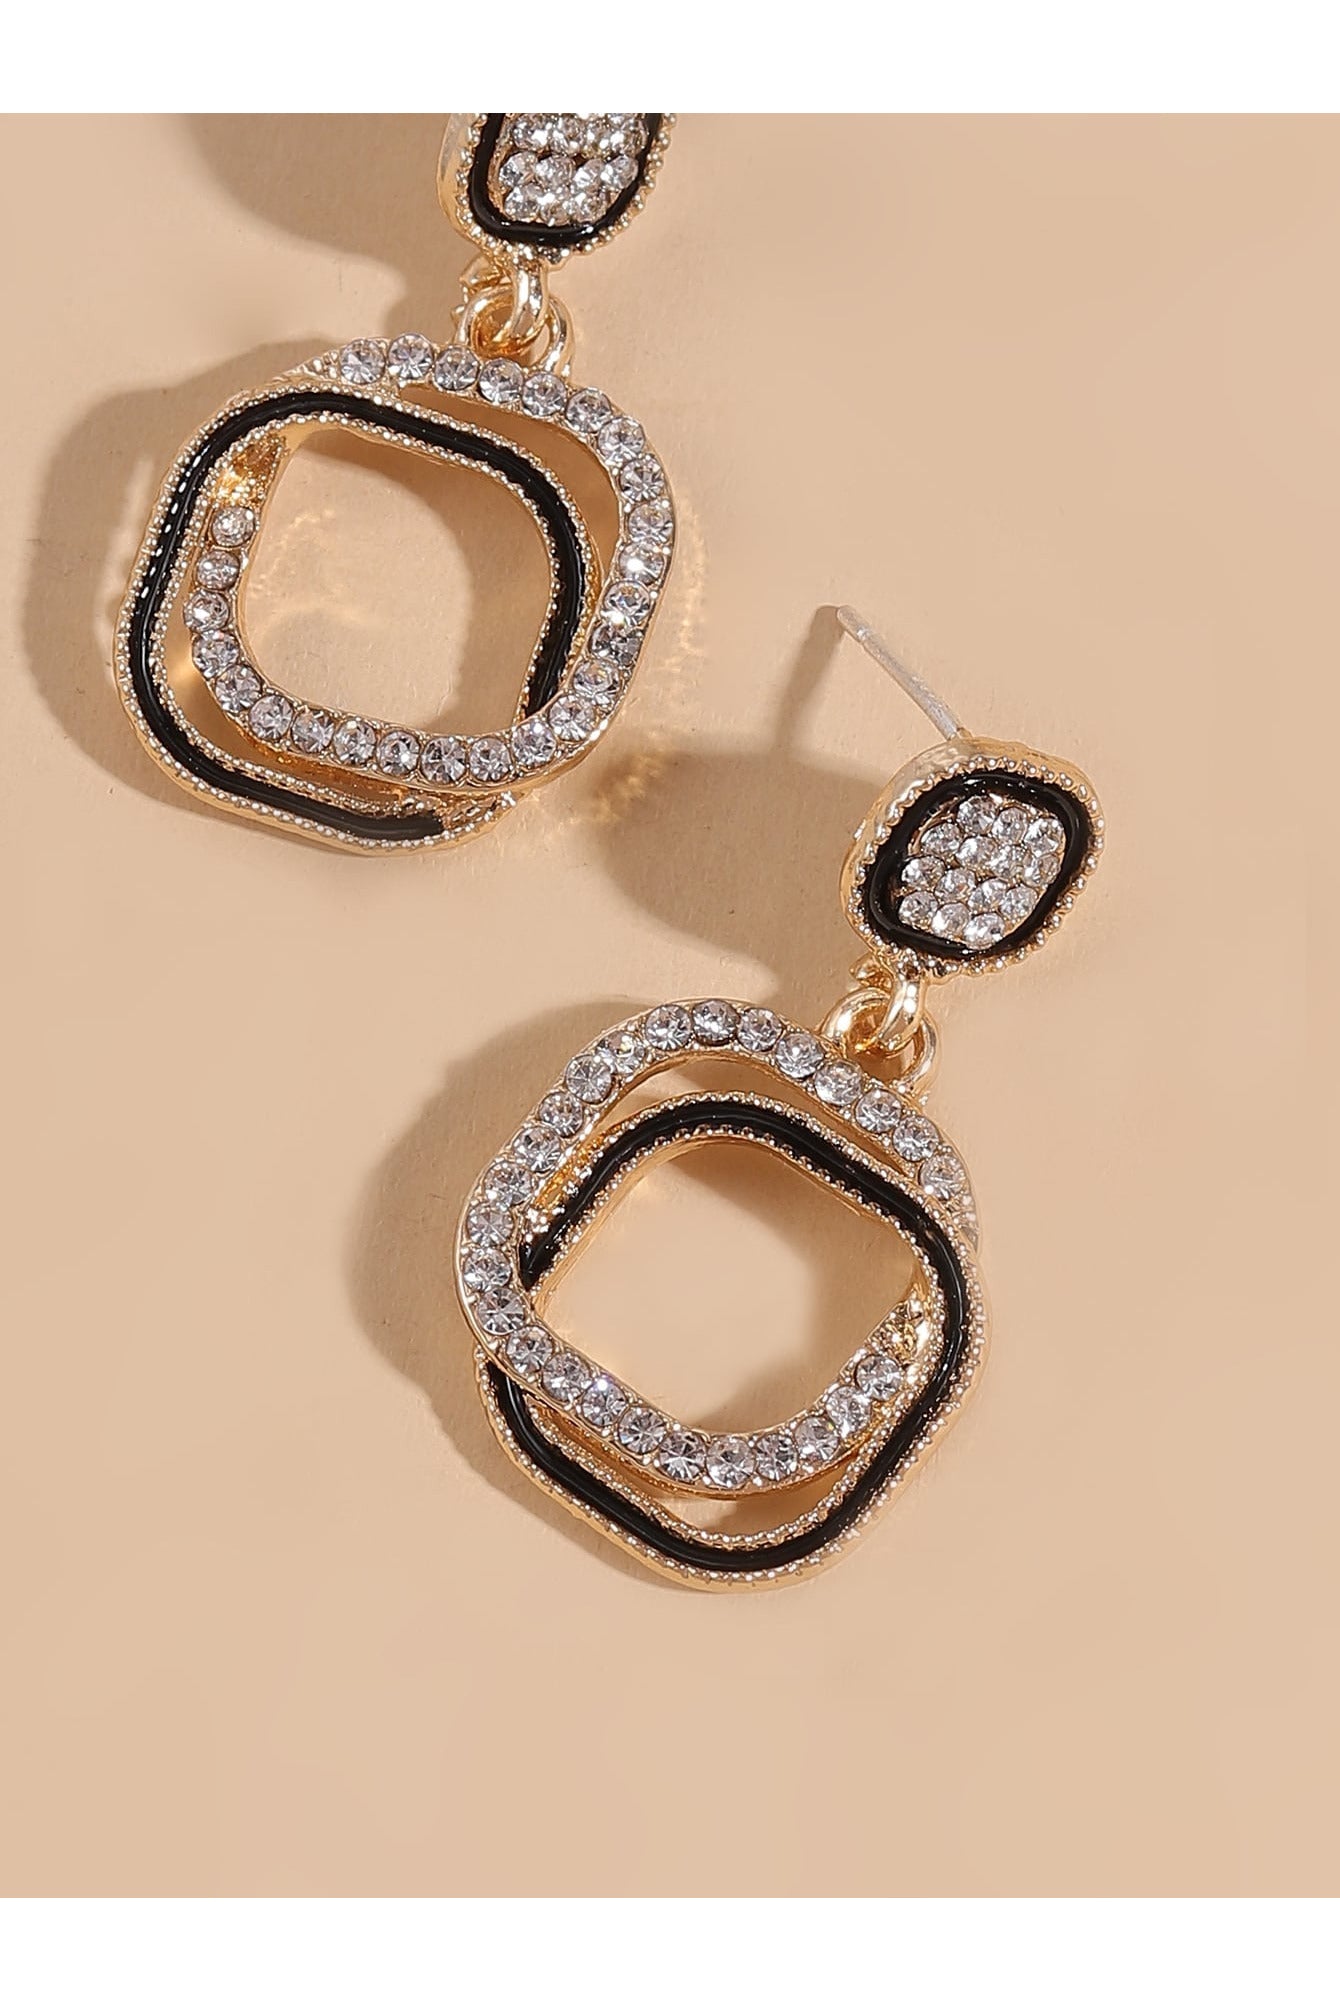 Buy Shein Rhinestone Decor Geometric Earrings - Yellow Gold in Pakistan